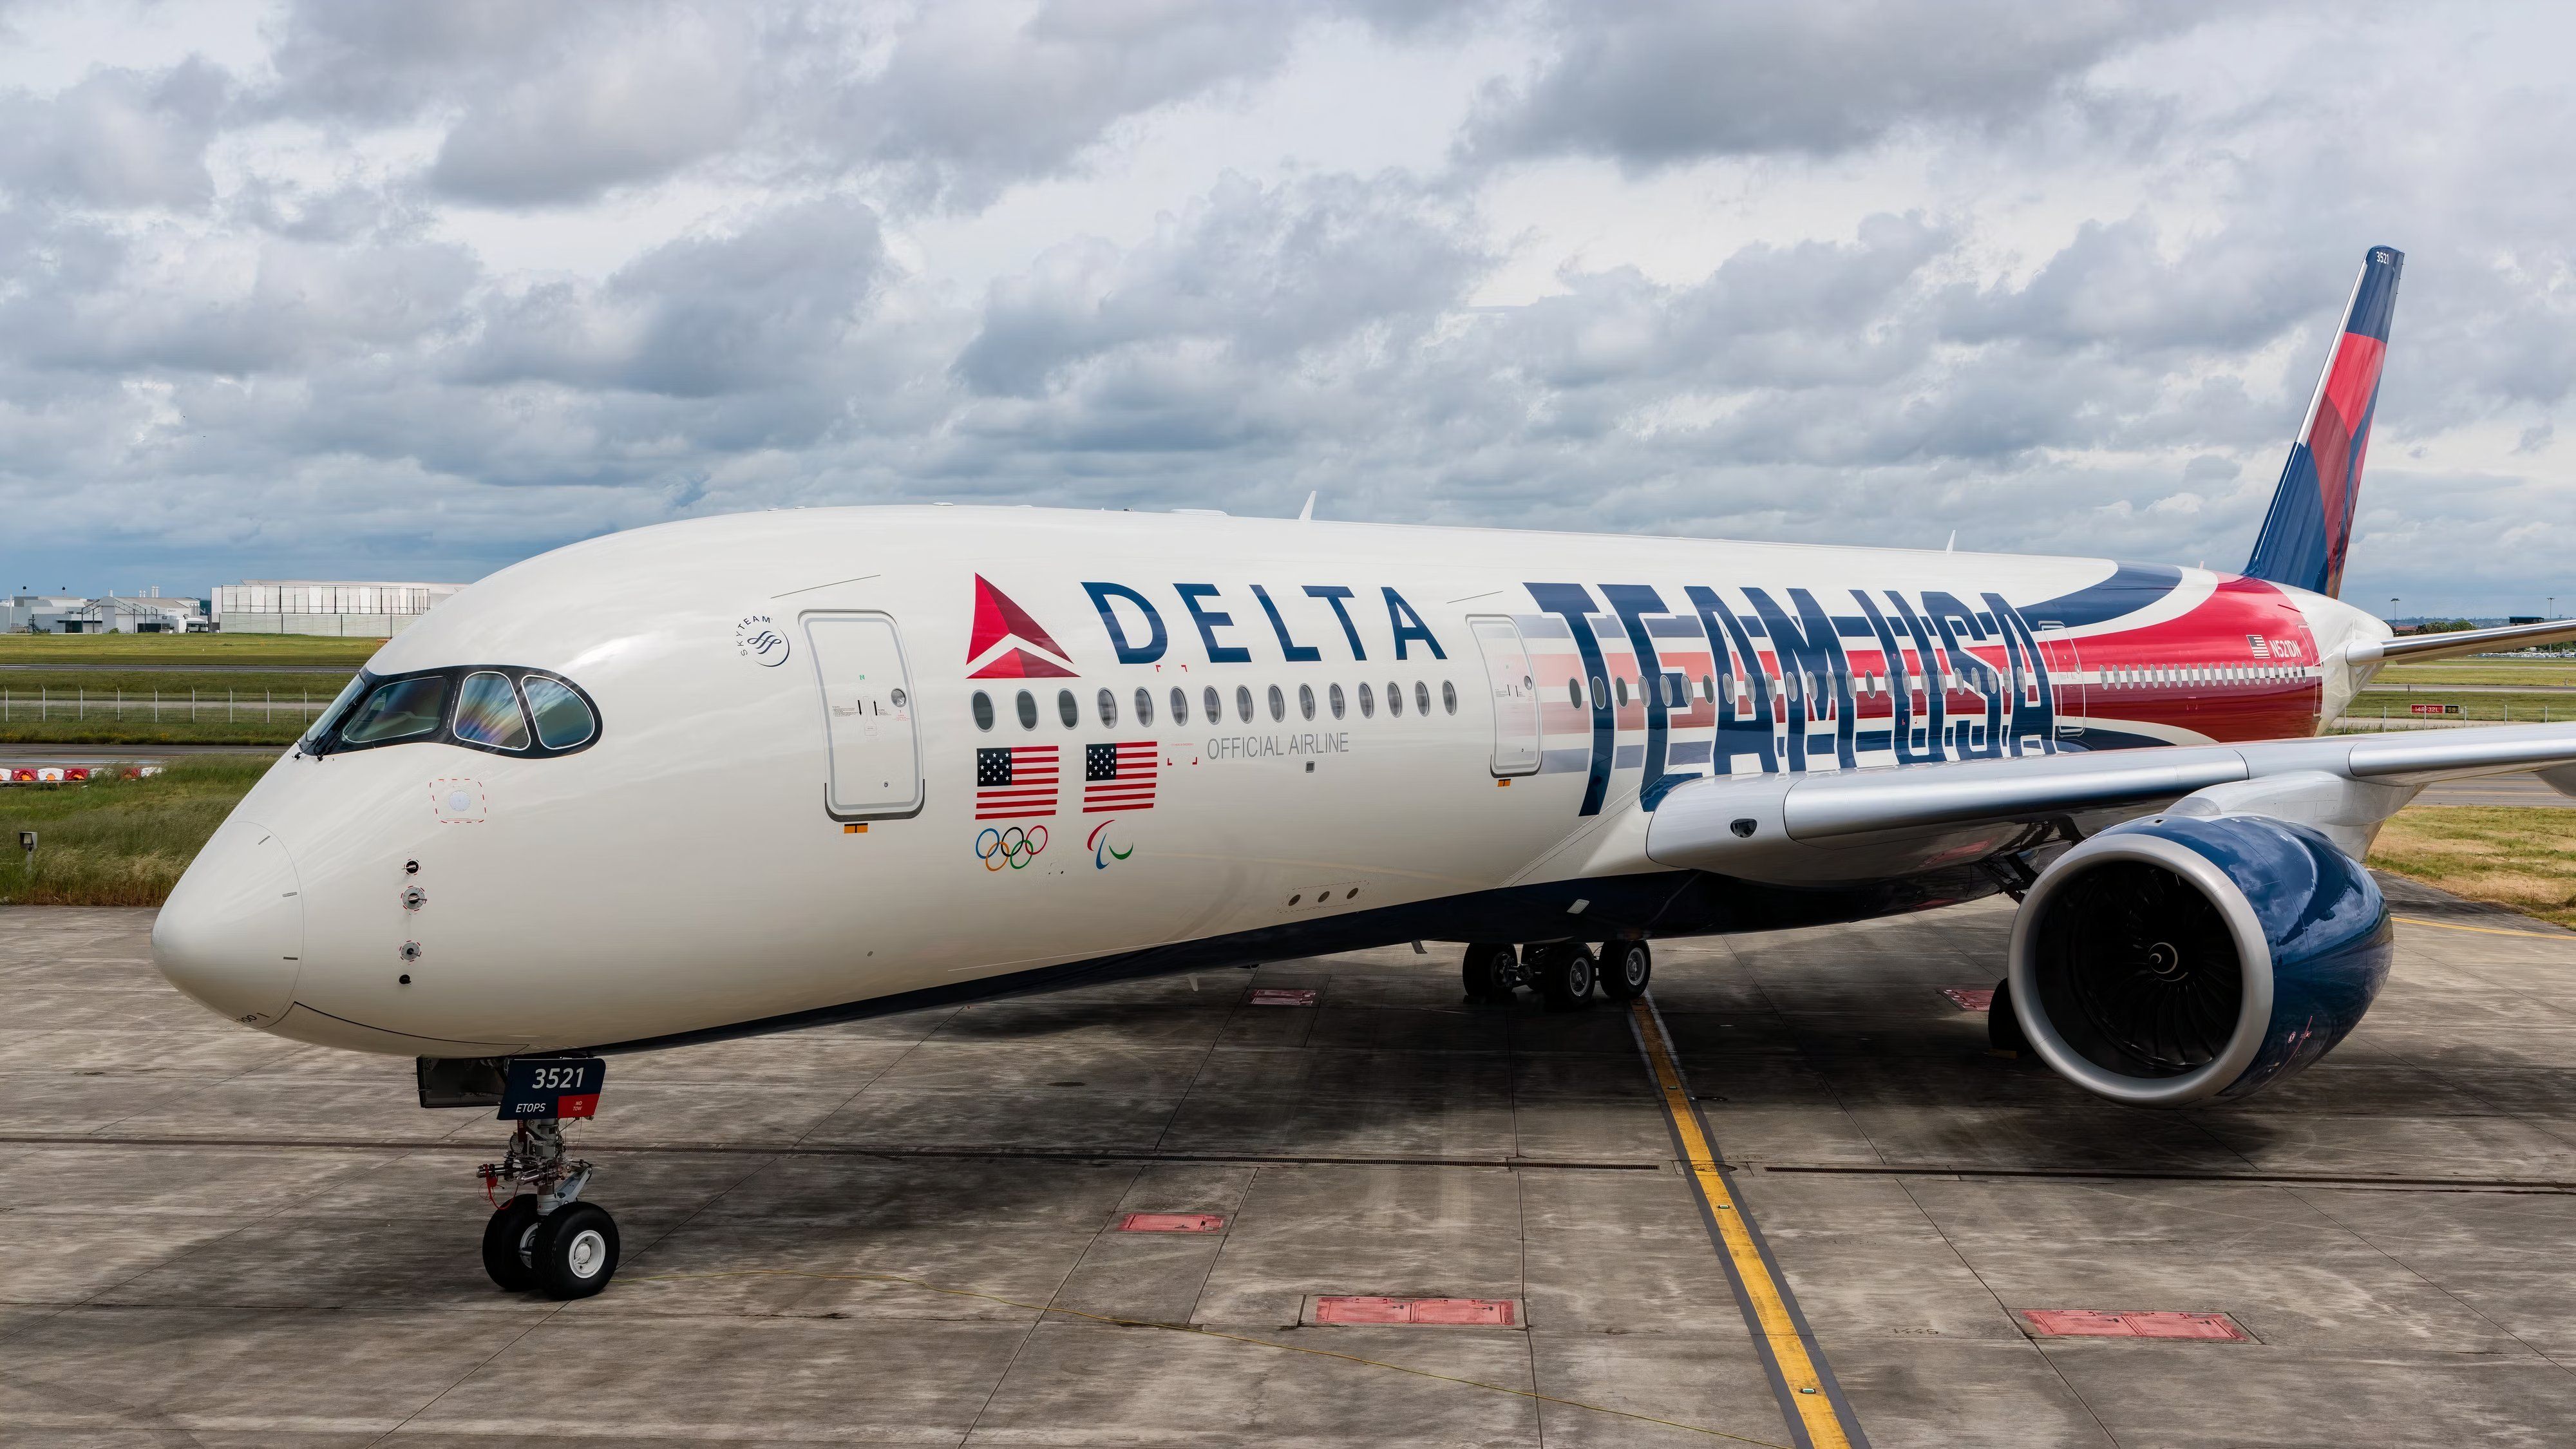 Delta A350-900 275 seats